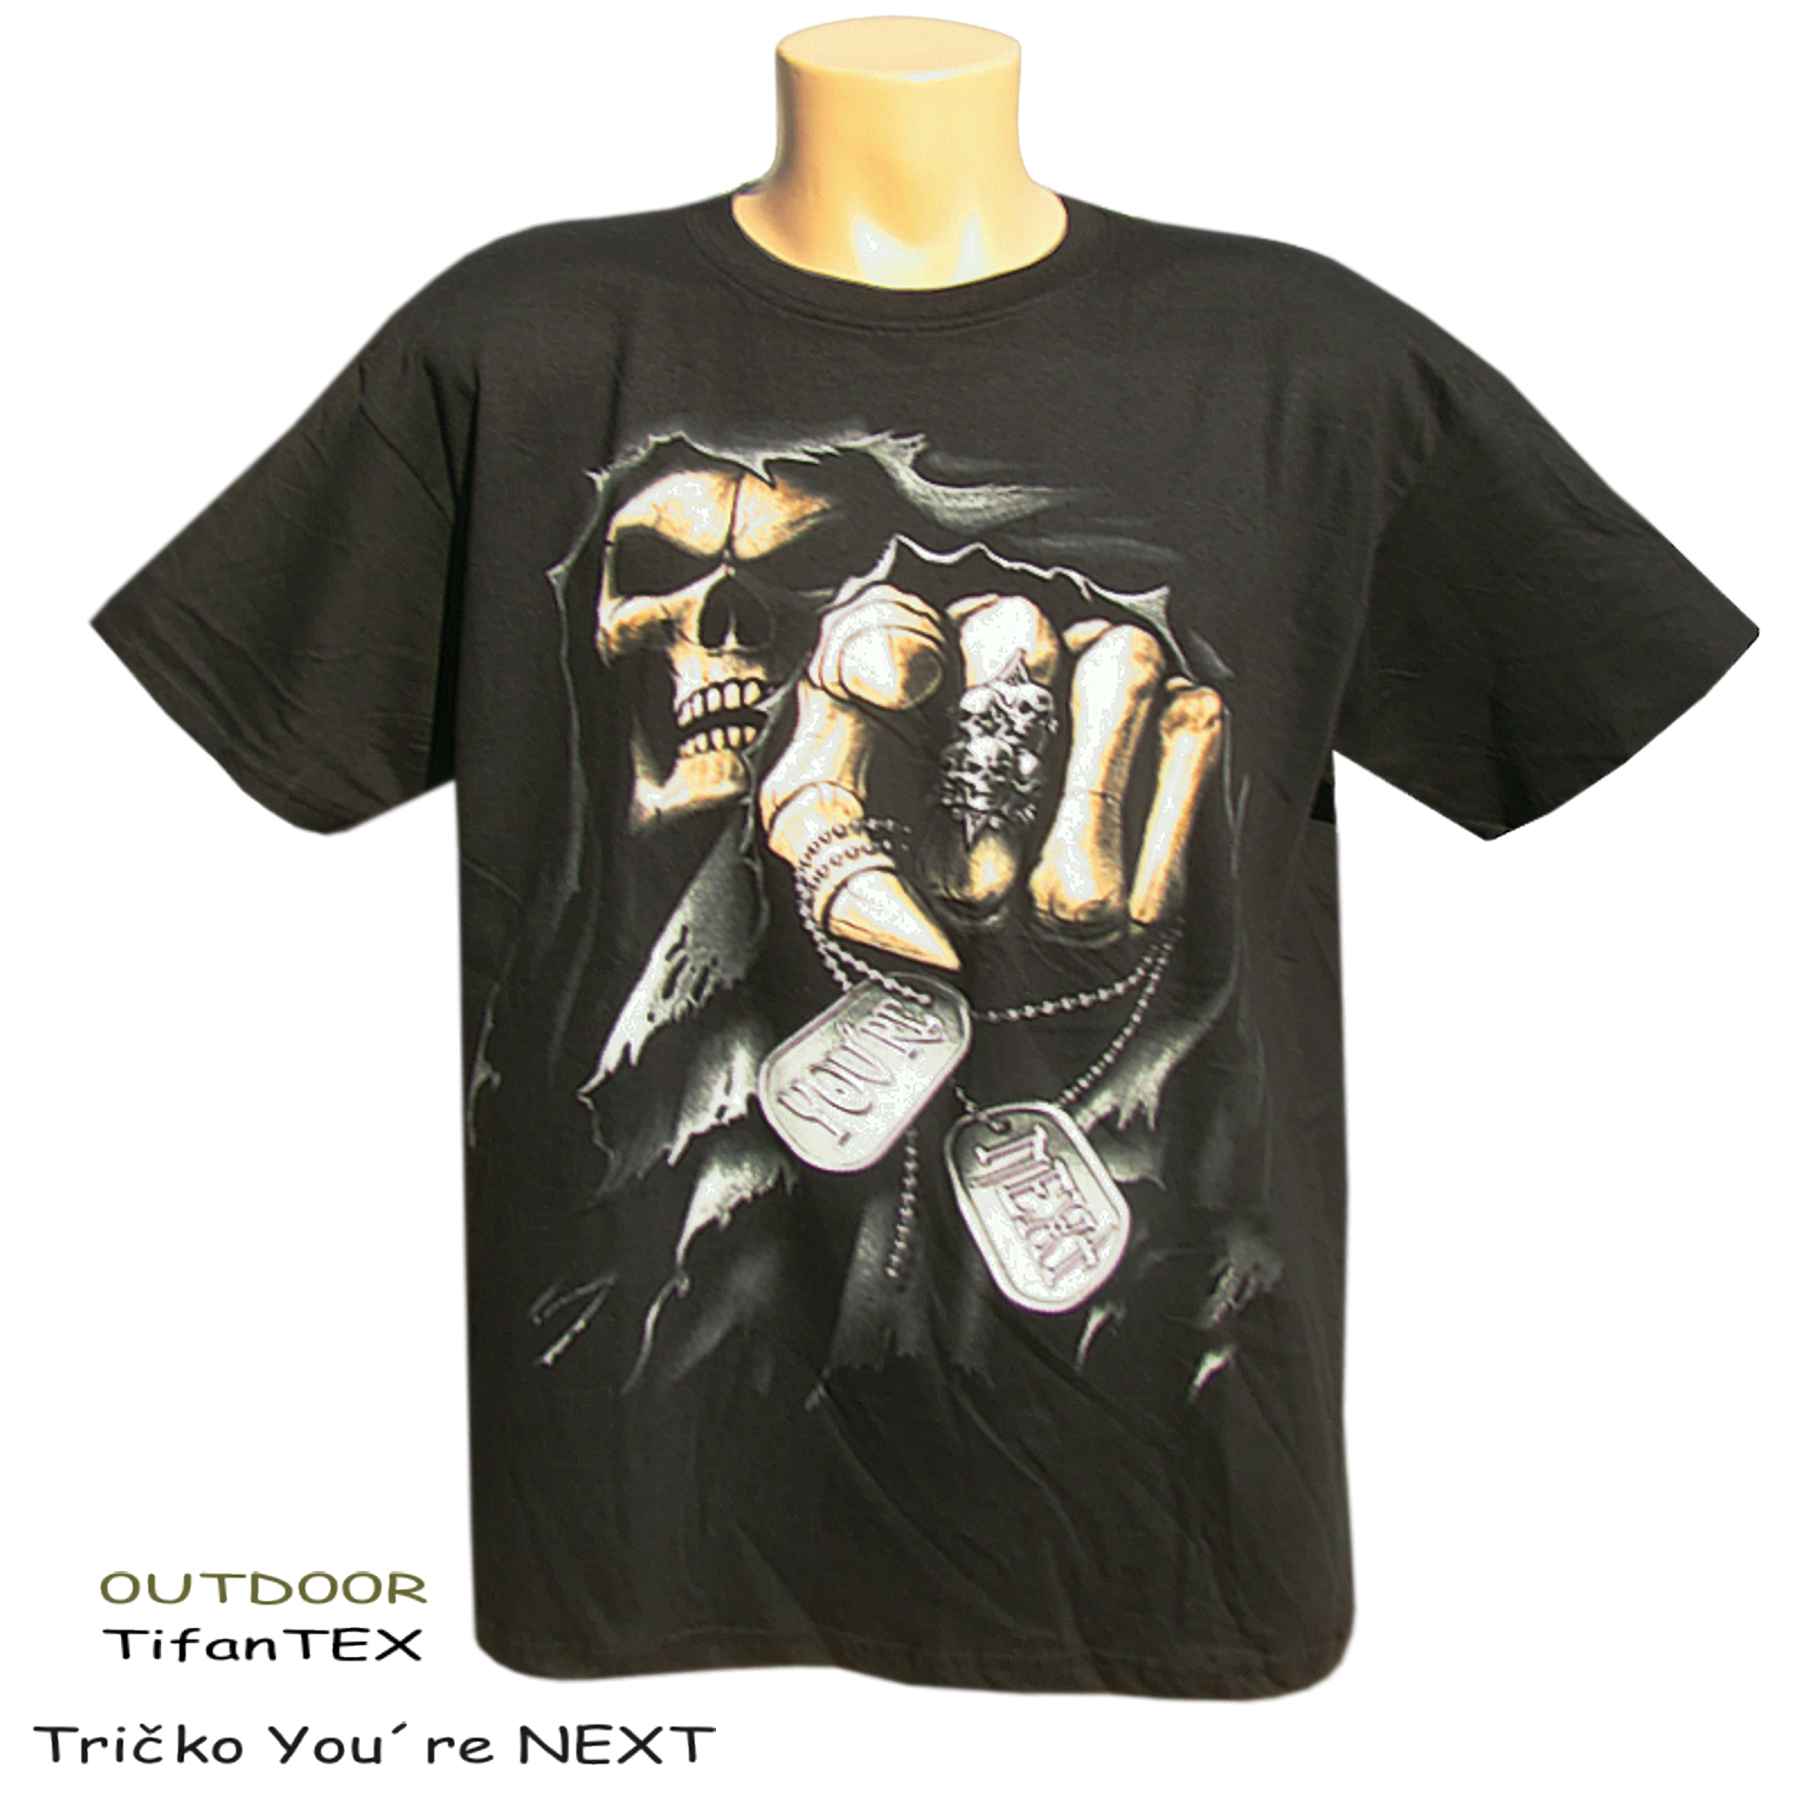 Pánske tričko You´re NEXT čierne, veľkobchod s odevami Tifantex